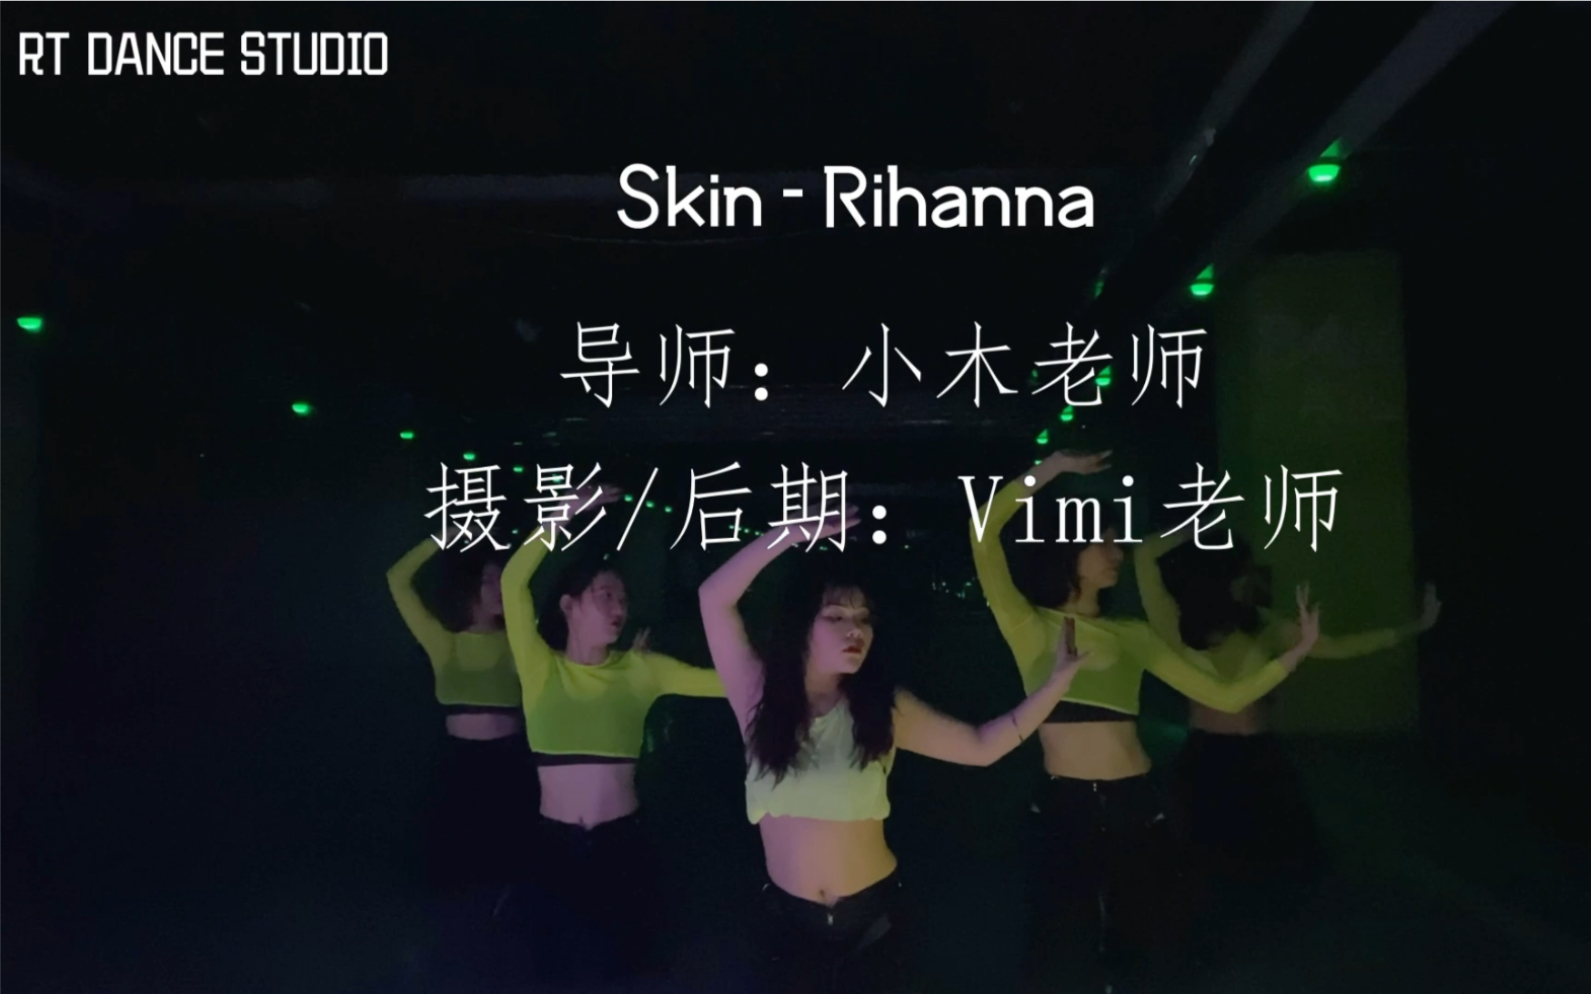 Sikn-Rihanna舞蹈